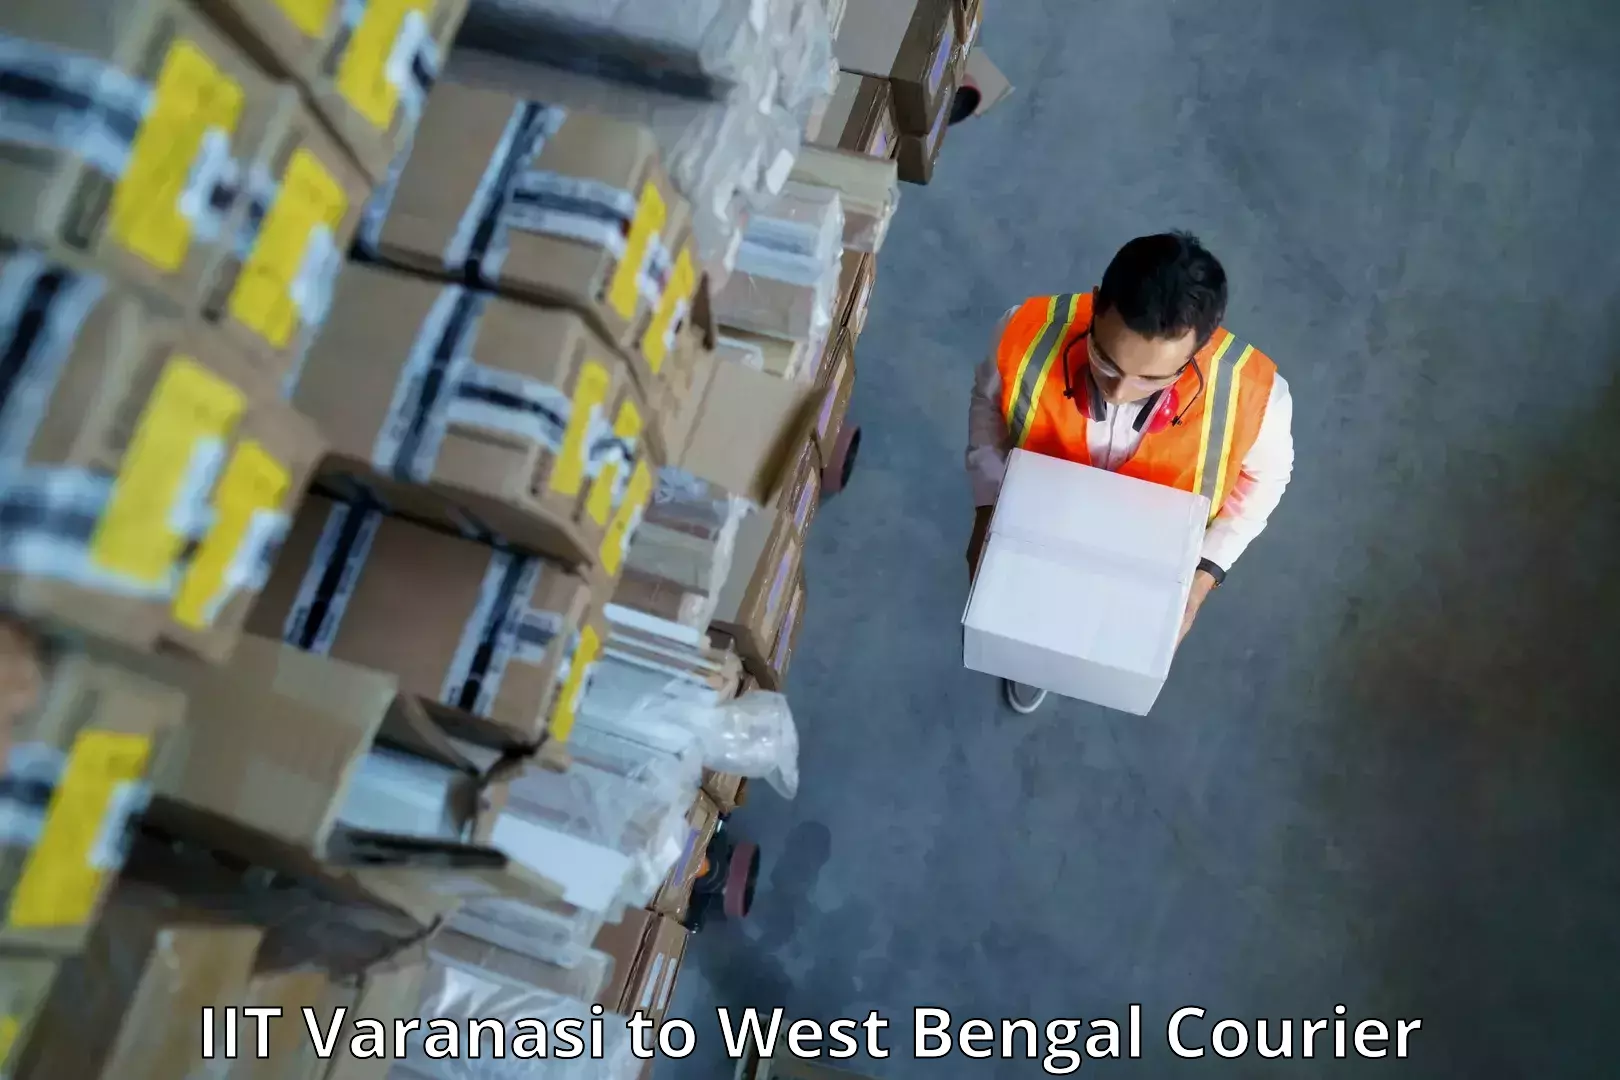 Business courier solutions IIT Varanasi to Panjipara